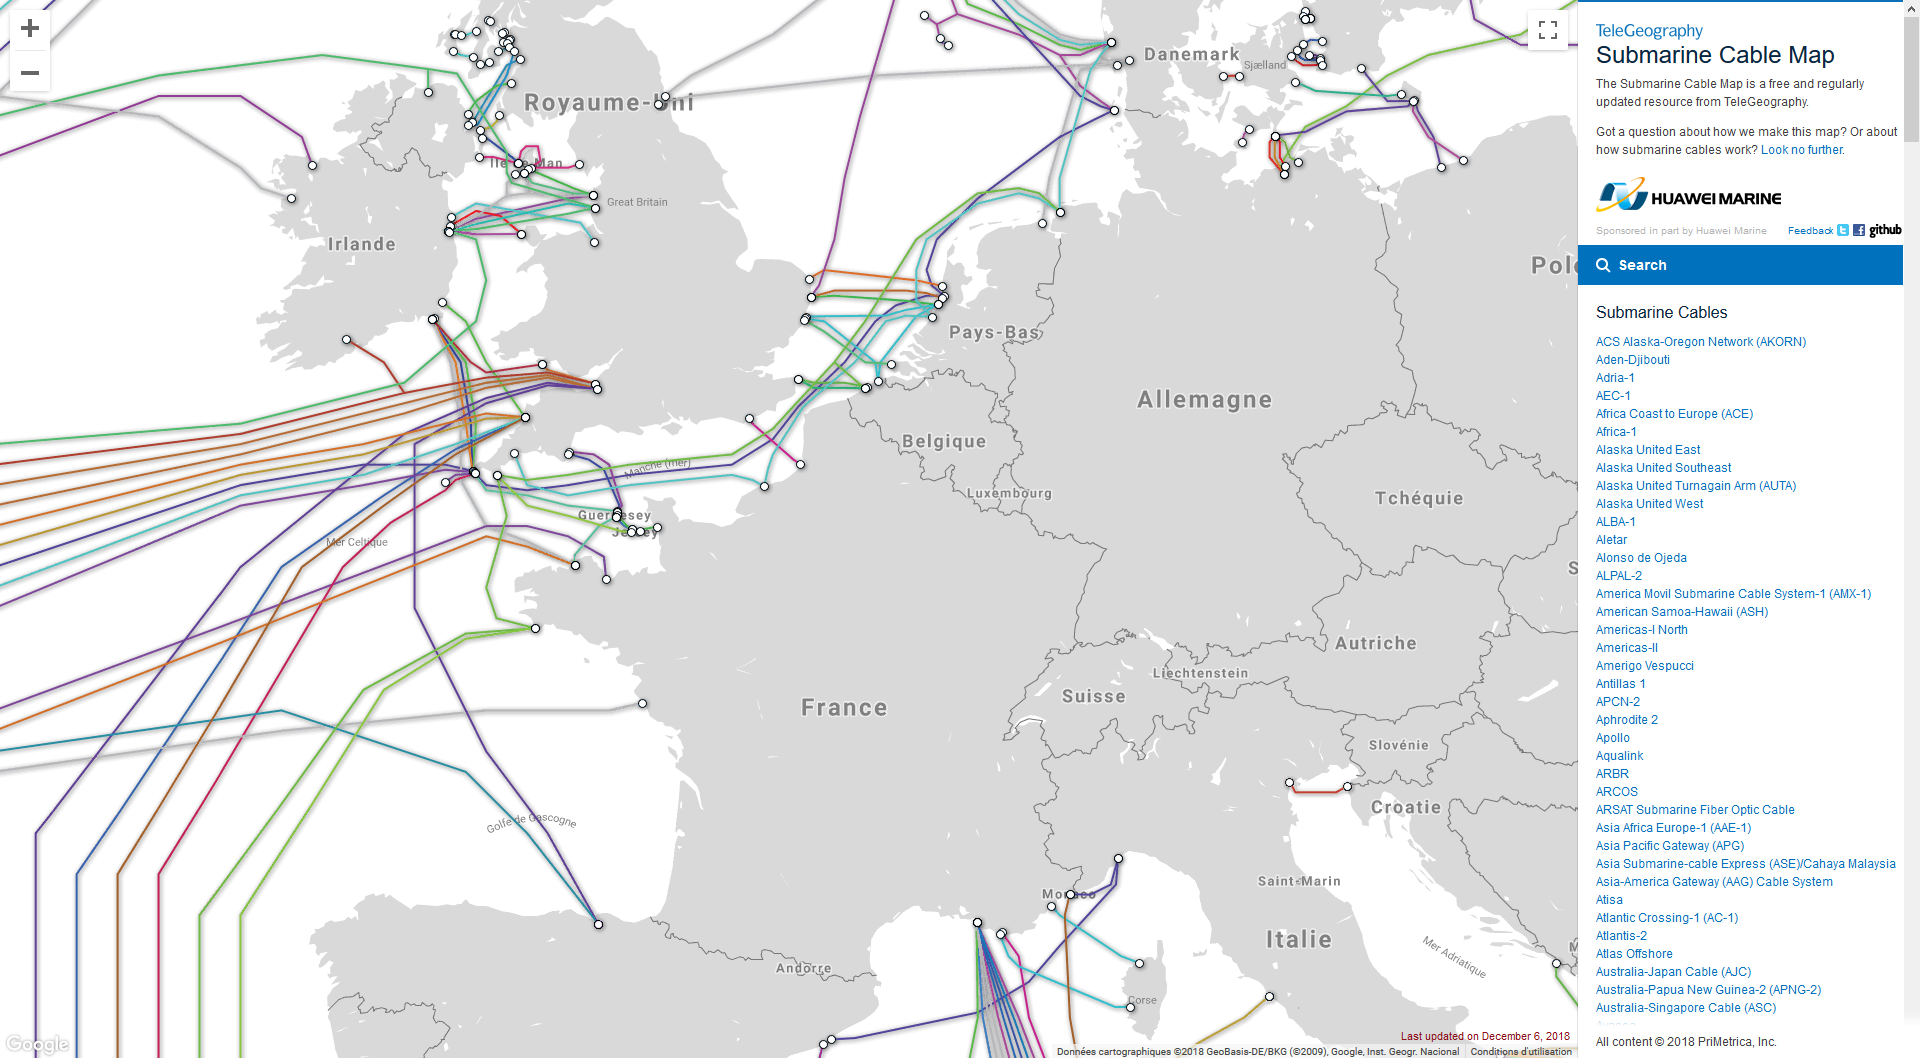 Кабели интернета в мире. Схема интернет кабелей в мире. Карта подводных кабелей интернета. Трансатлантический кабель карта. Карта оптоволоконных кабелей.